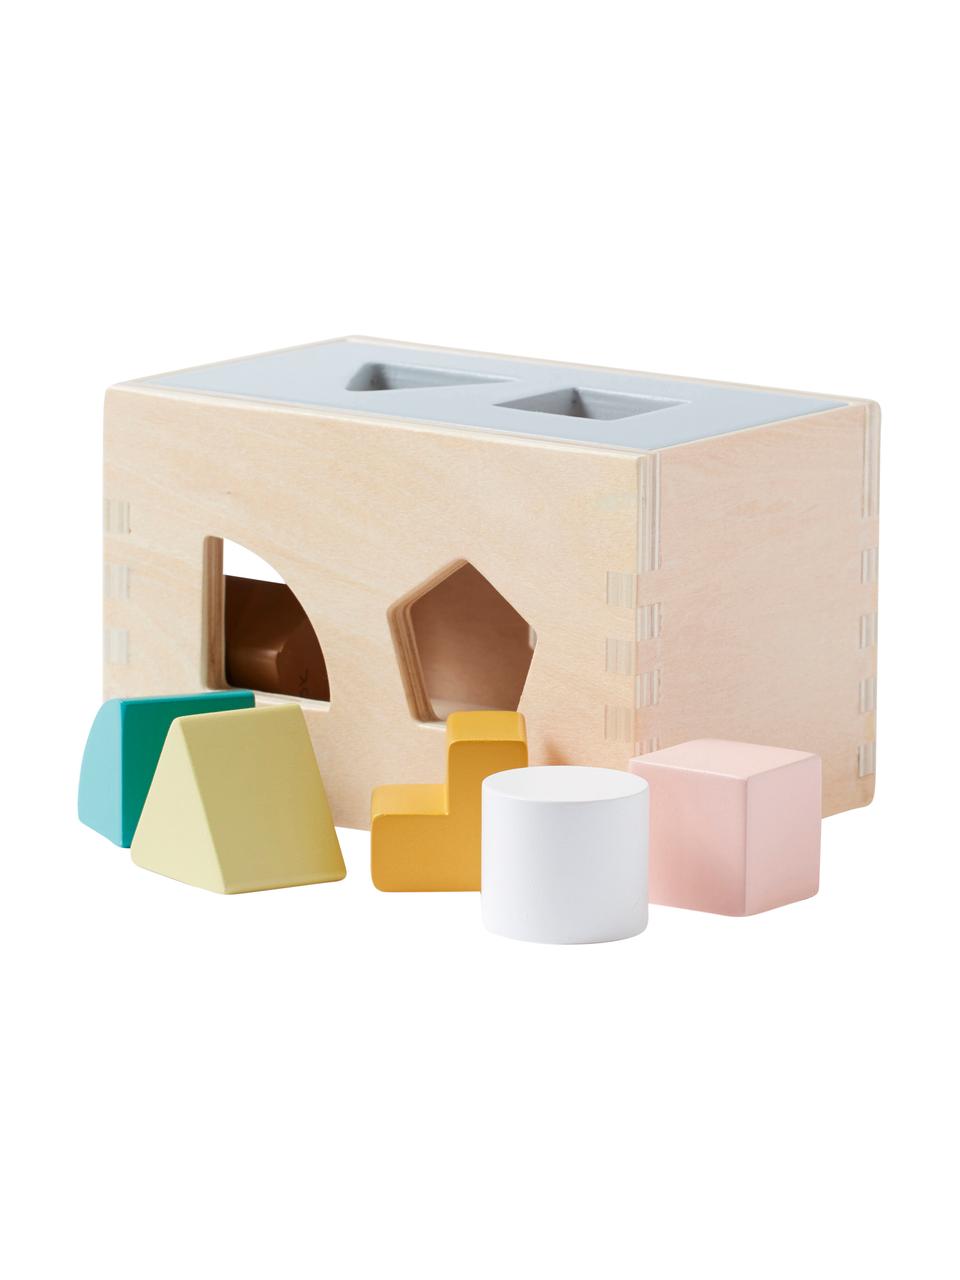 Spielzeug-Set Aiden mit Steckspiel, Holz, Bunt, B 30 x H 13 cm